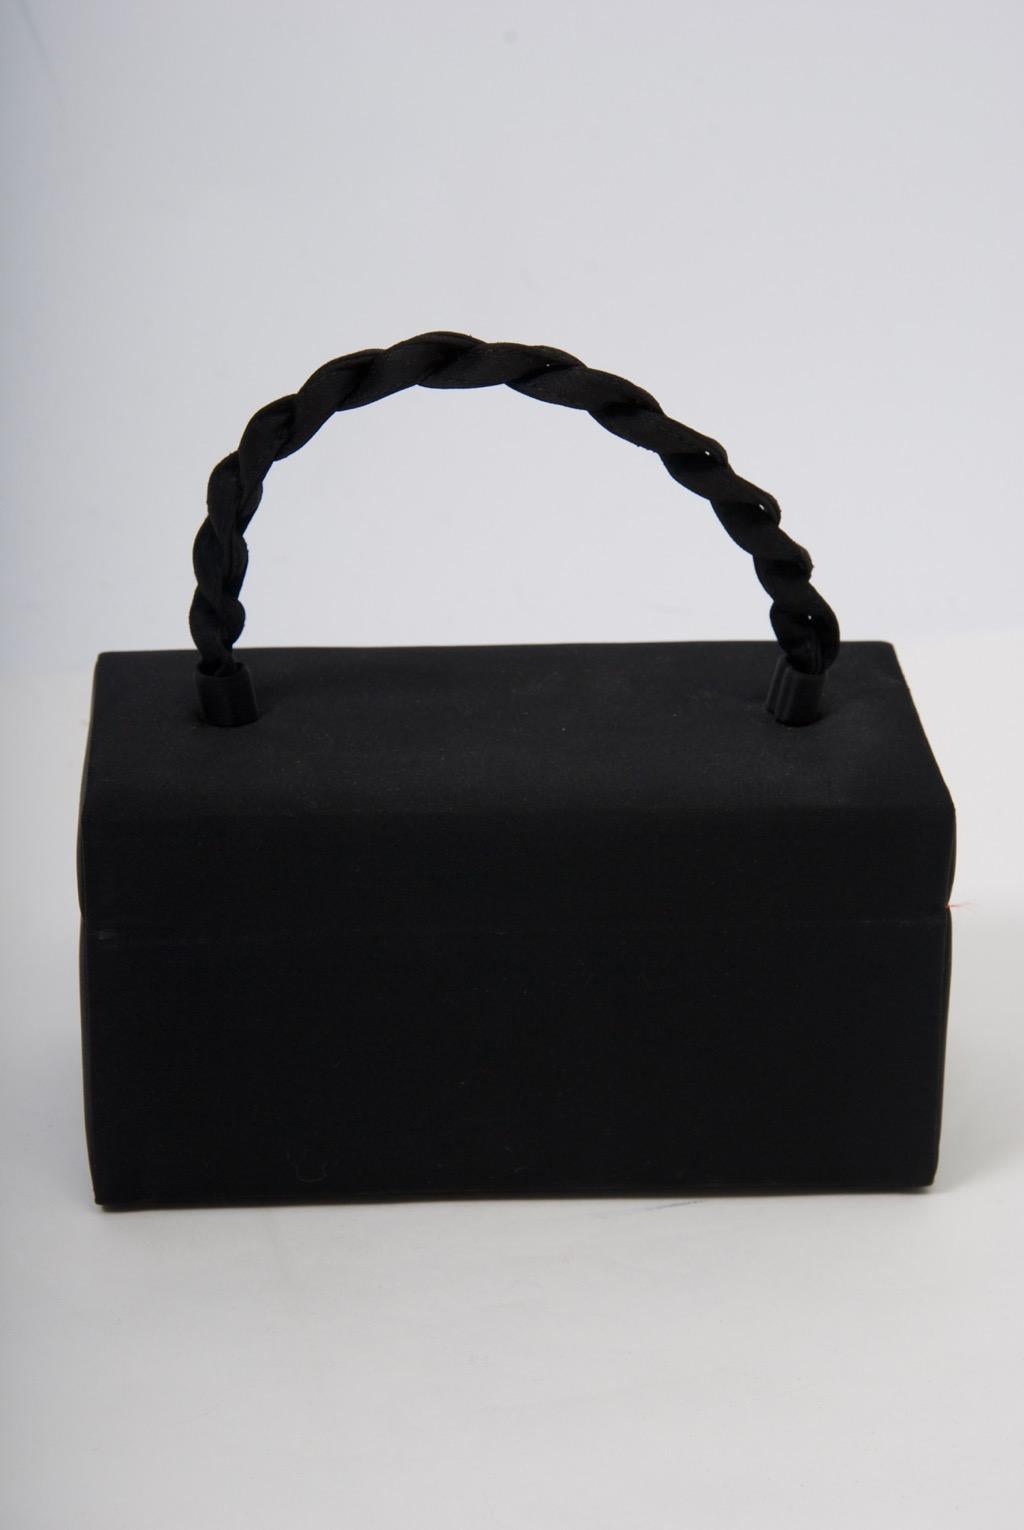 sac en forme de boîte Ingber des années 1960, de couleur noire, doté d'une poignée supérieure en corde et d'un fermoir en forme de bijou. Ouvrez pour révéler un intérieur rouge avec un compartiment latéral. Beaucoup de place pour le téléphone et les